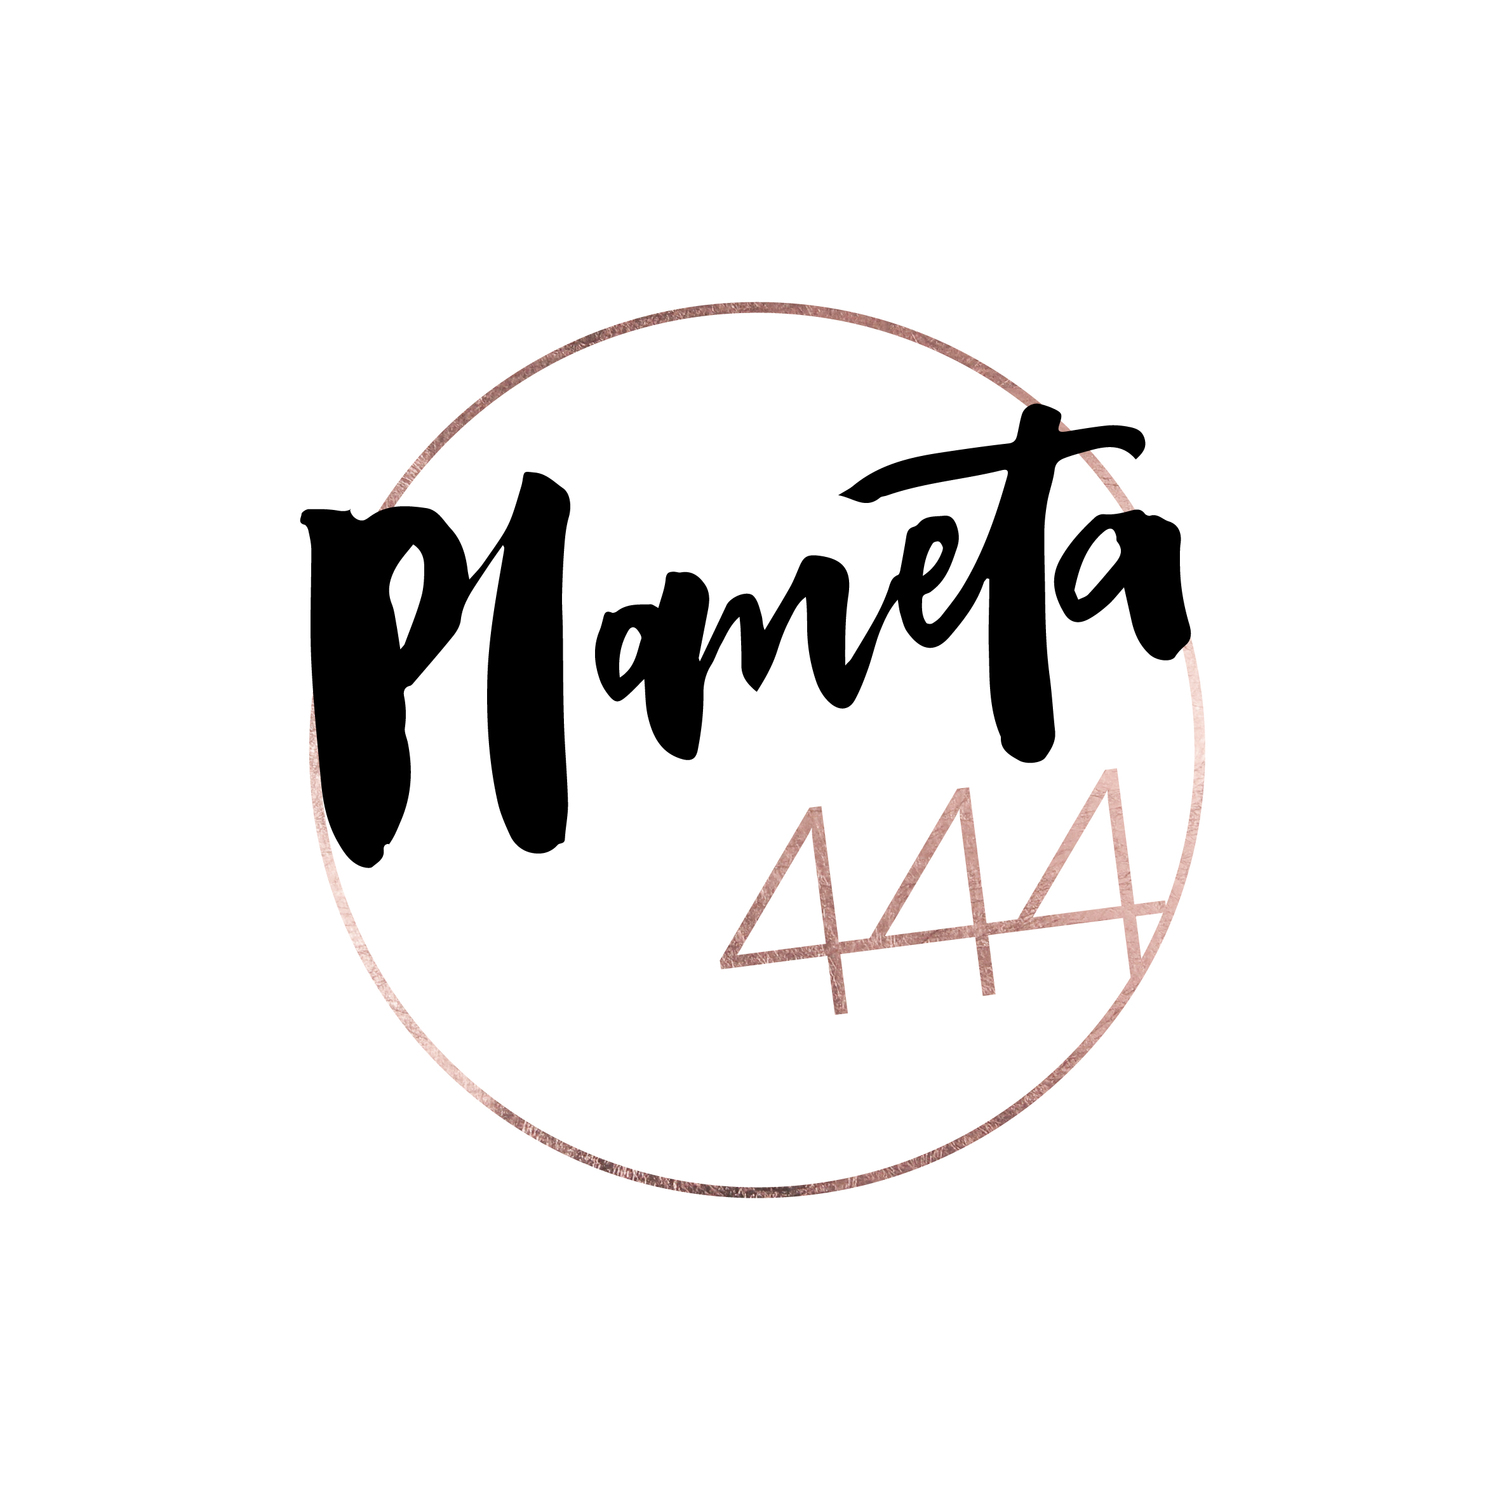 Planeta444